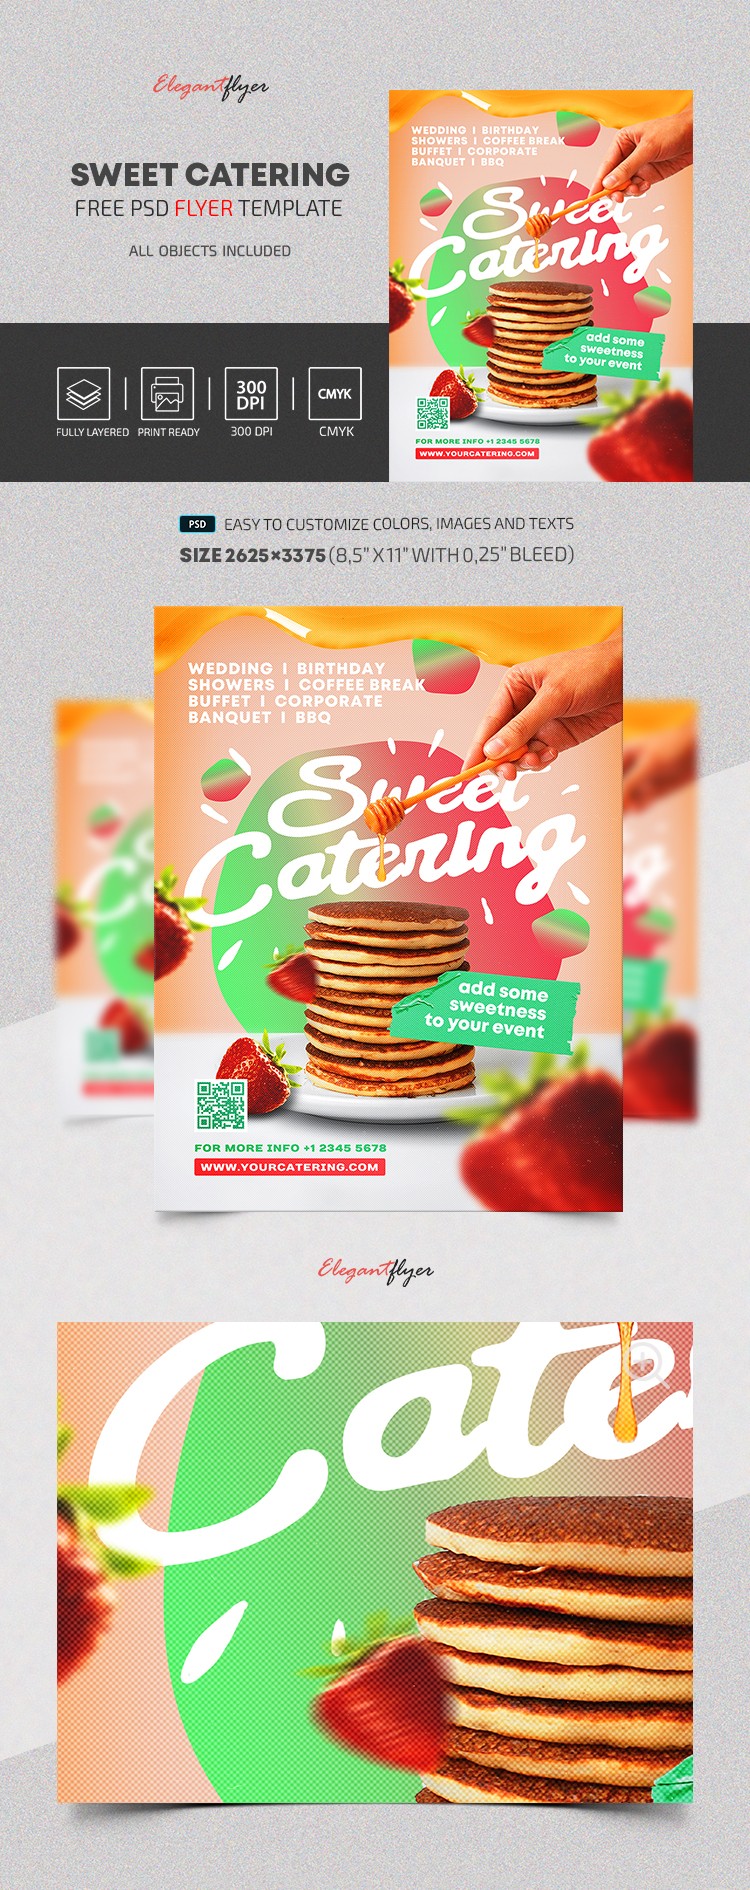 Sweet Catering Flyer by ElegantFlyer